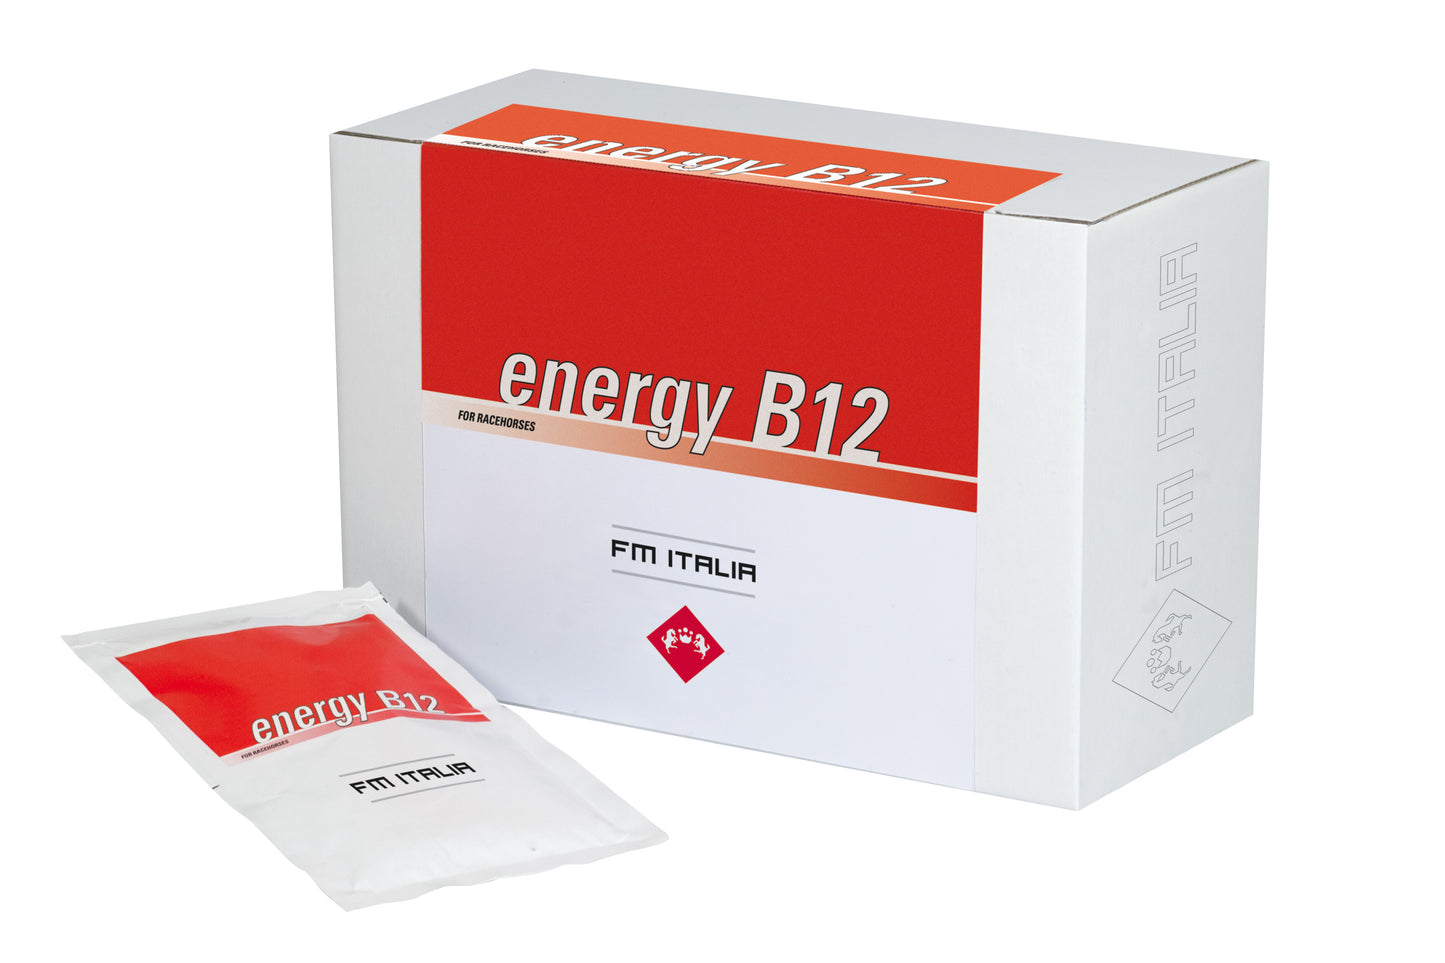 ENERGY B12 | Poeder Complementair Voer voor Vitamine B12 Behoeften tijdens Sportactiviteiten